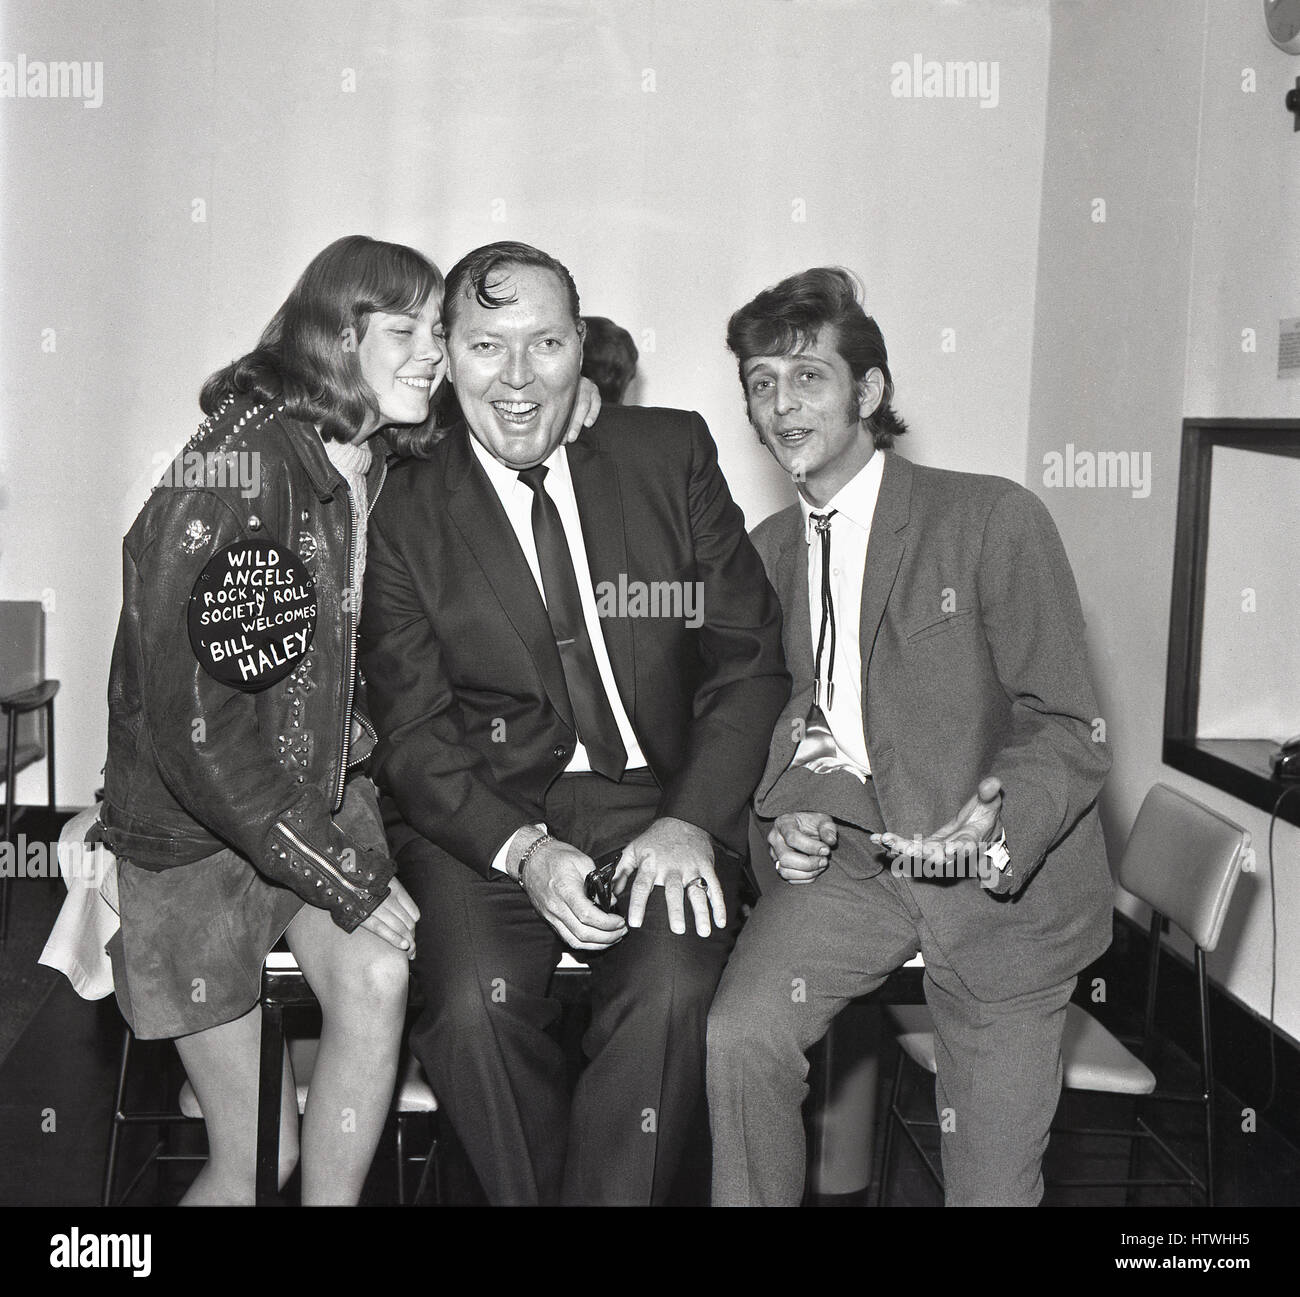 Anni sessanta storico, American rock and roll singer Bill Haley con una giovane femmina la ventola dell'angeli selvaggi e mal grigio, Londra, Inghilterra Foto Stock